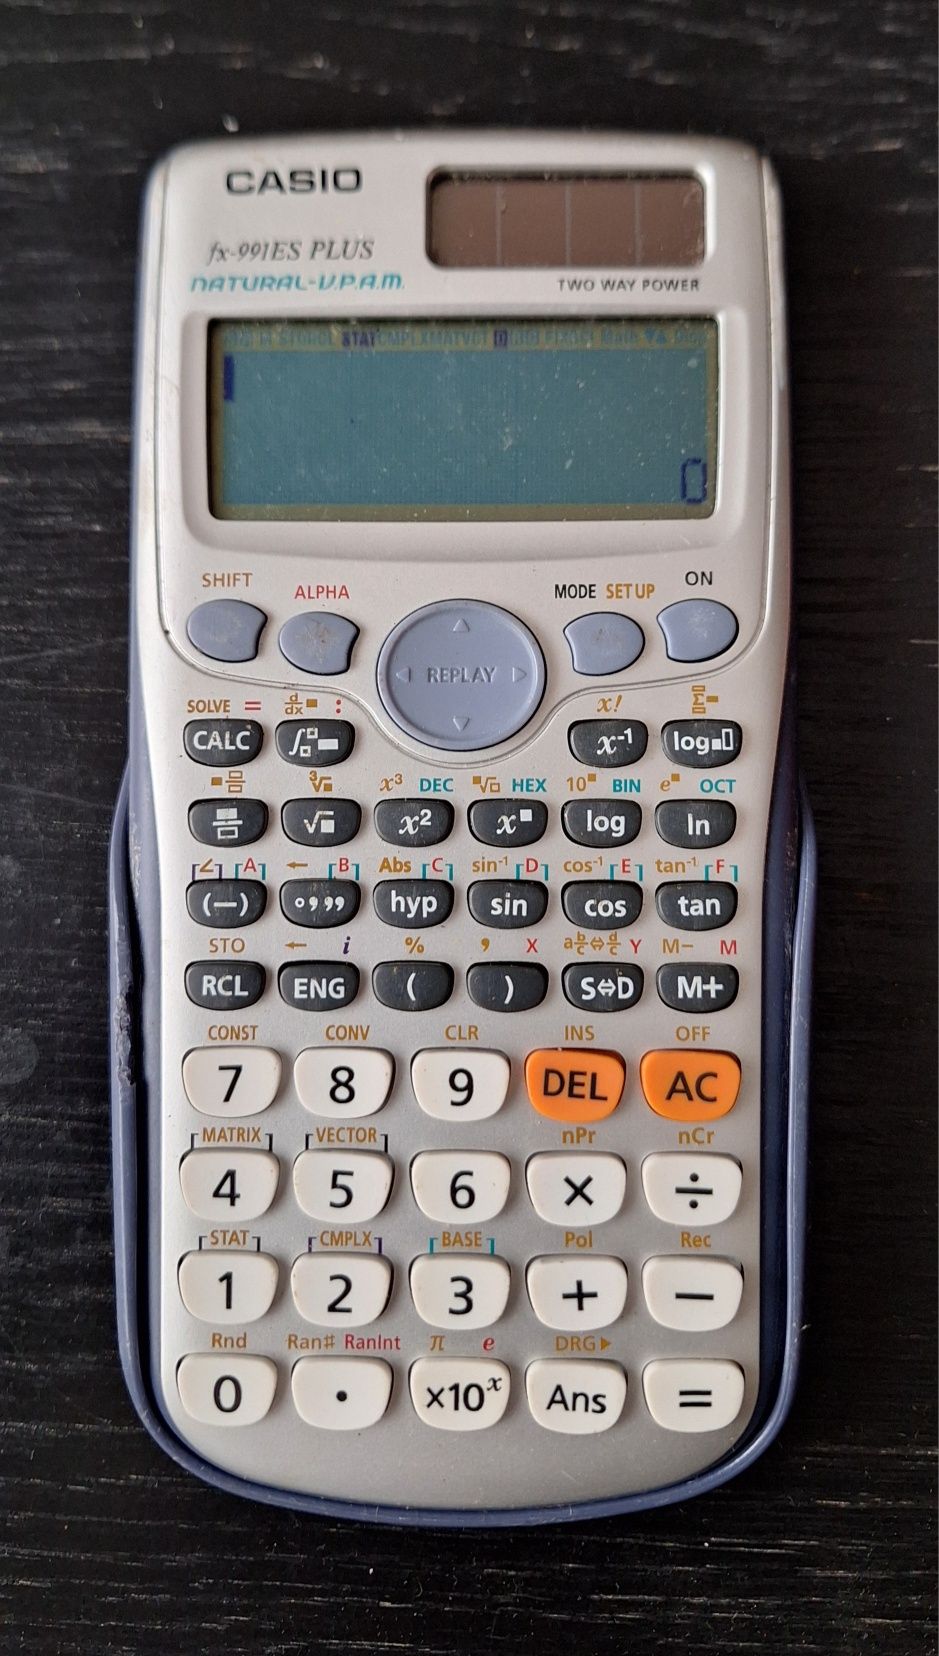 Kalkulator naukowy Casio FX-991ES